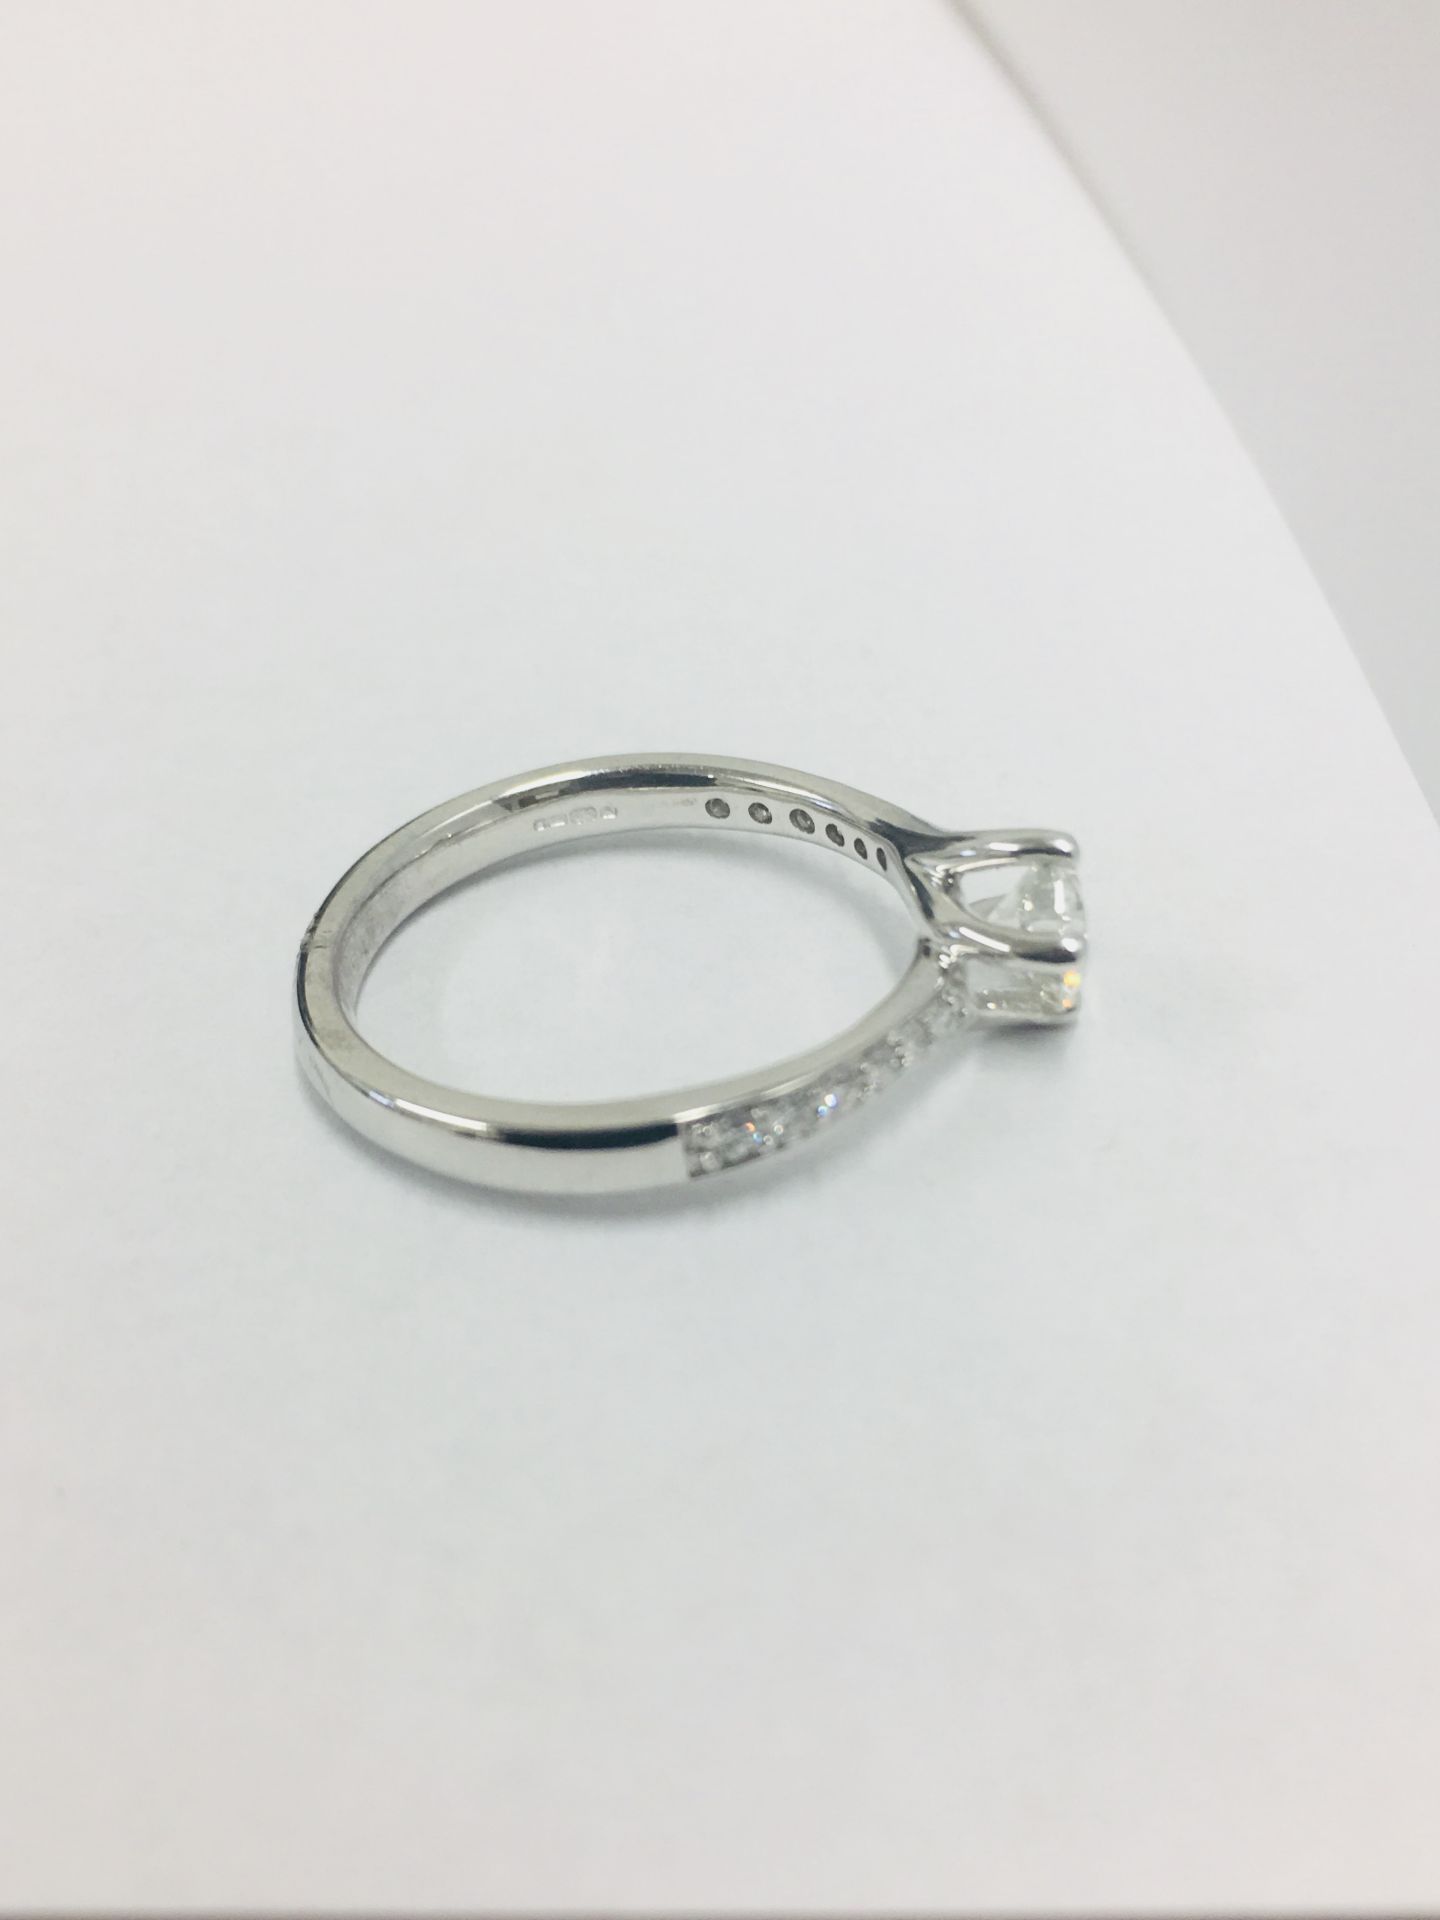 platinum damond solitaire ring,0.50ct brilliant cut diamond h colour vs clarity(clarity enhanced), - Bild 5 aus 6